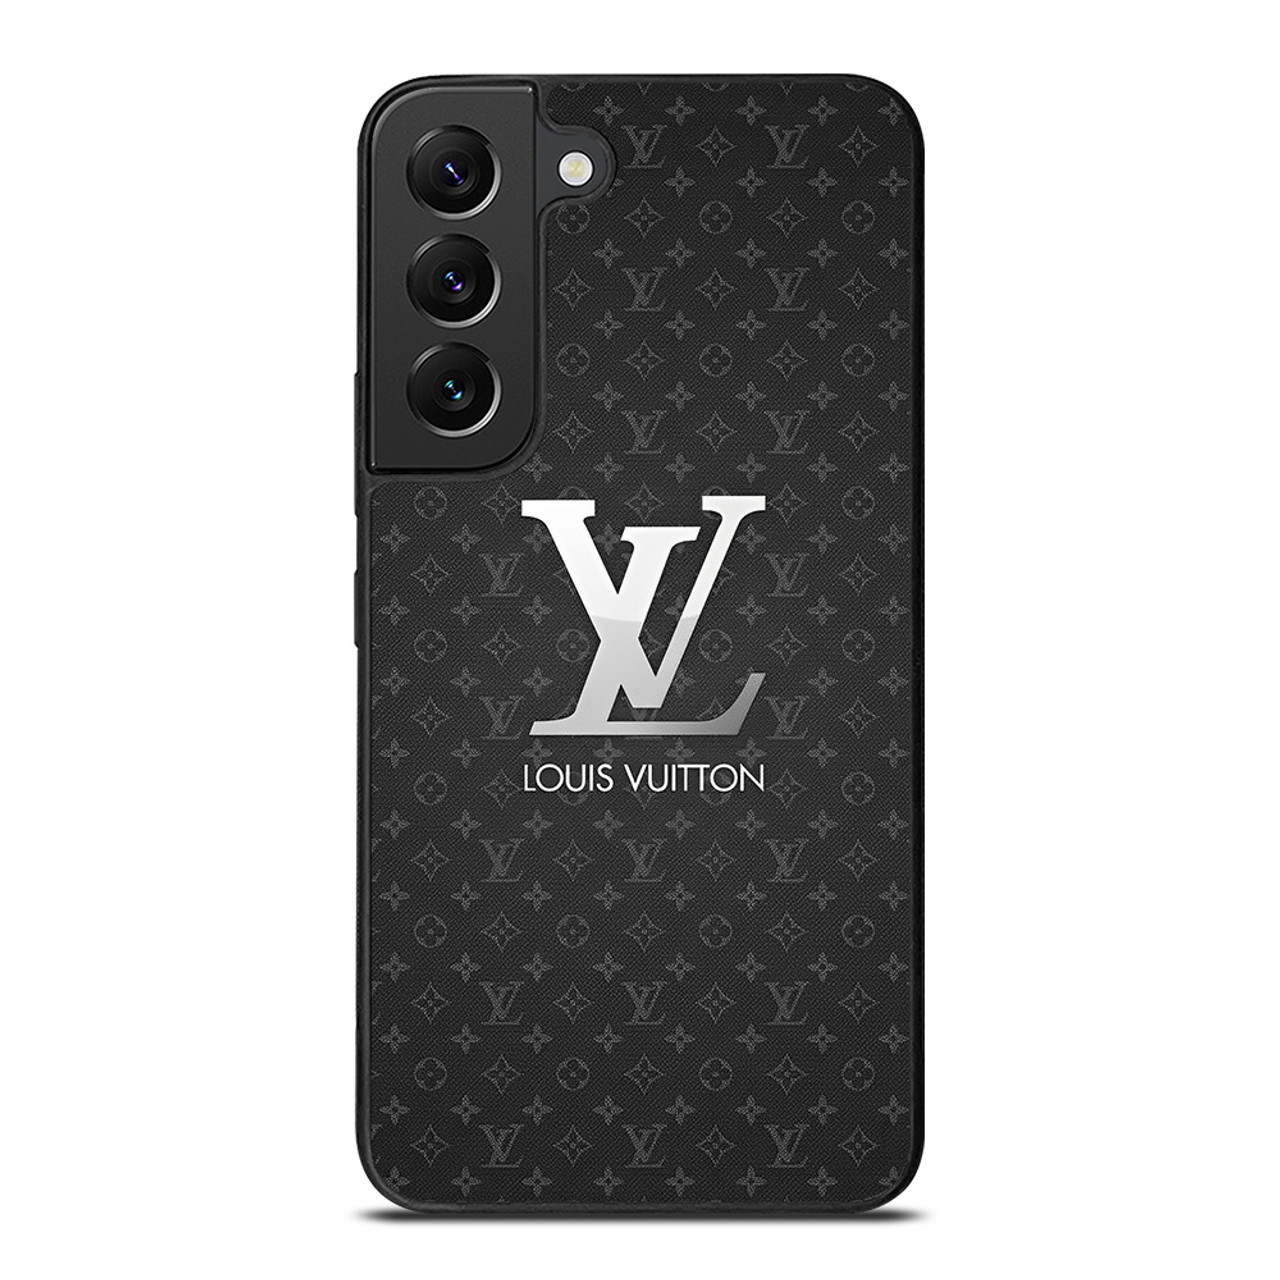 LOUIS VUITTON LV BLACK LOGO Samsung Galaxy S22 Case Cover